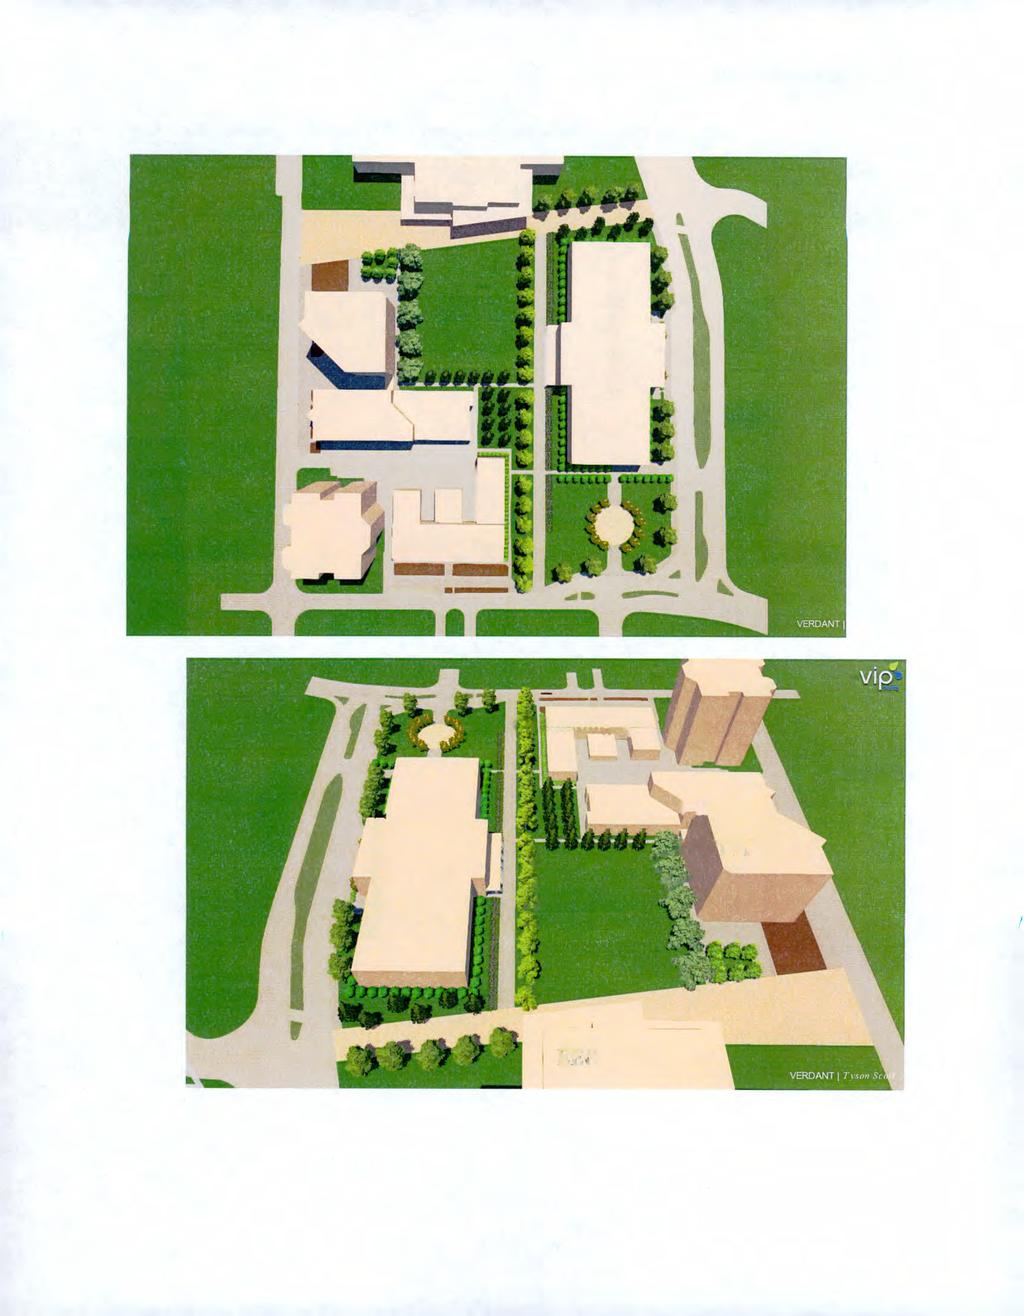 Demolition Page 4 of 6 Proposed Landscape Plan for EEC